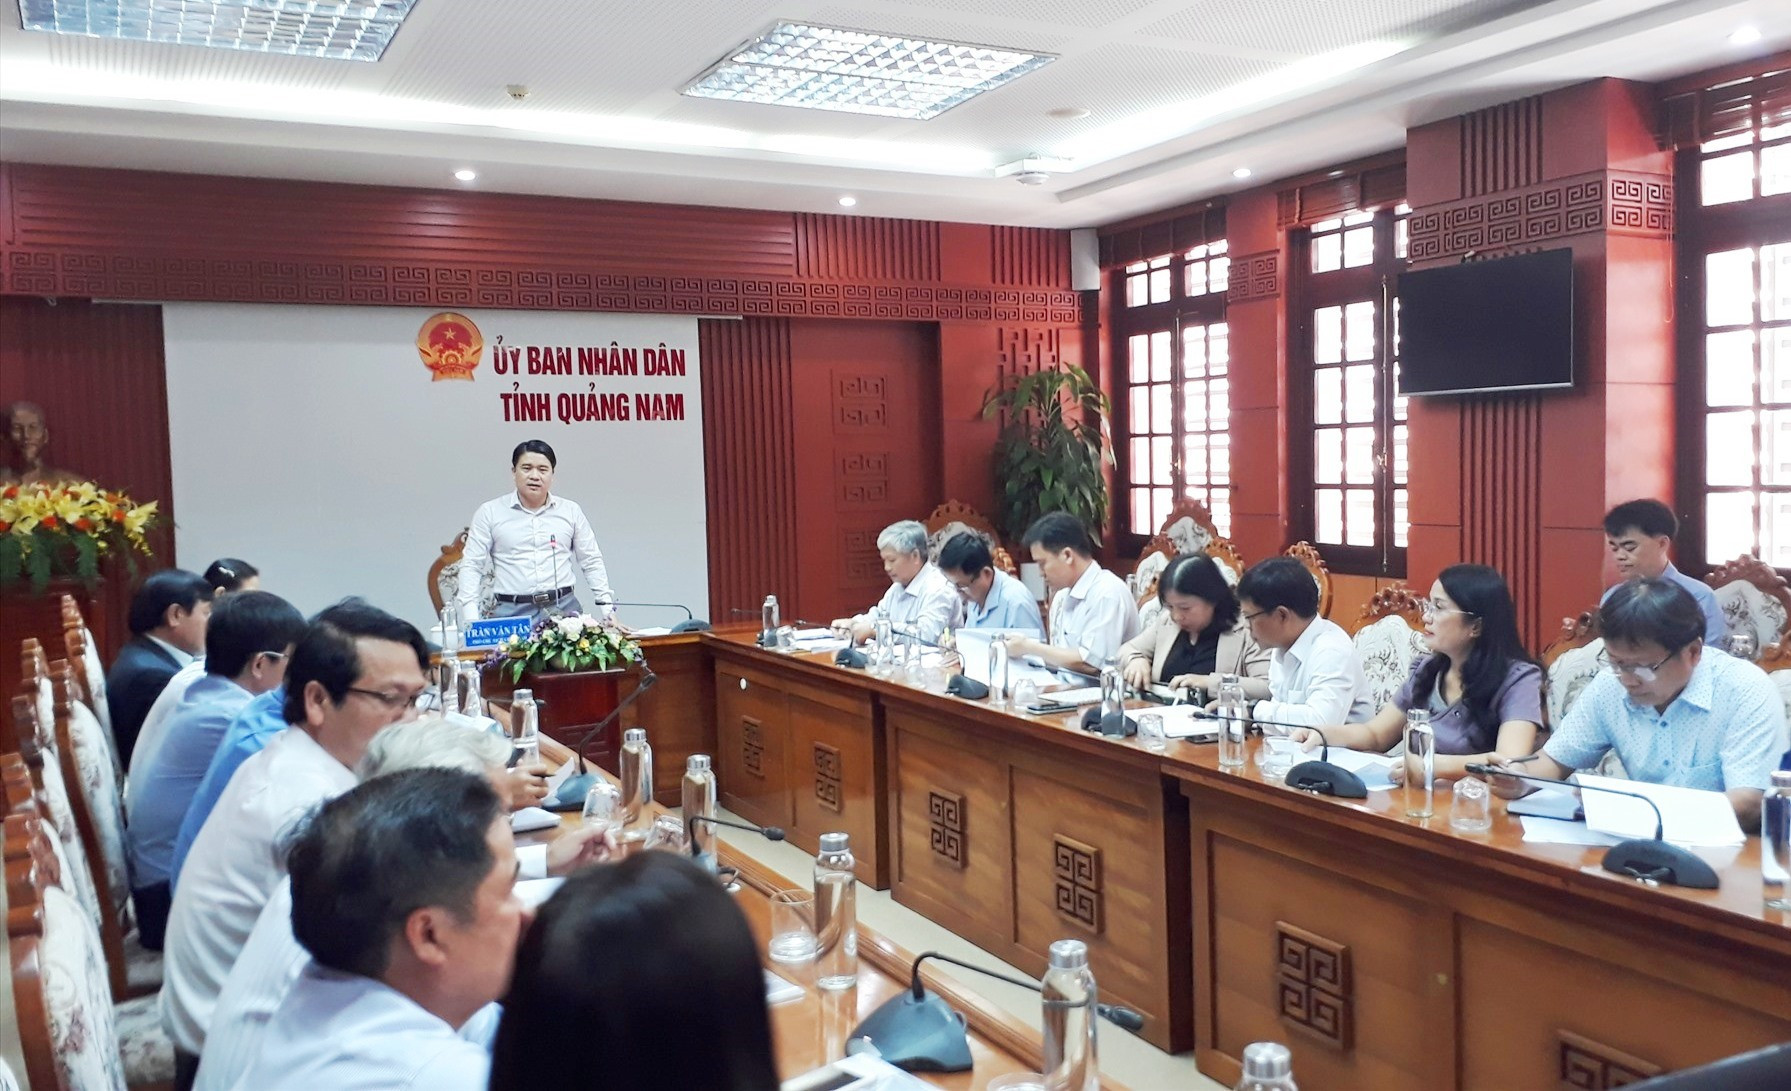 Phó Chủ tịch UBND tỉnh Trần Văn Tân đồng ý cho các địa phương hợp đồng giáo viên để giảng dạy. Ảnh: X.P